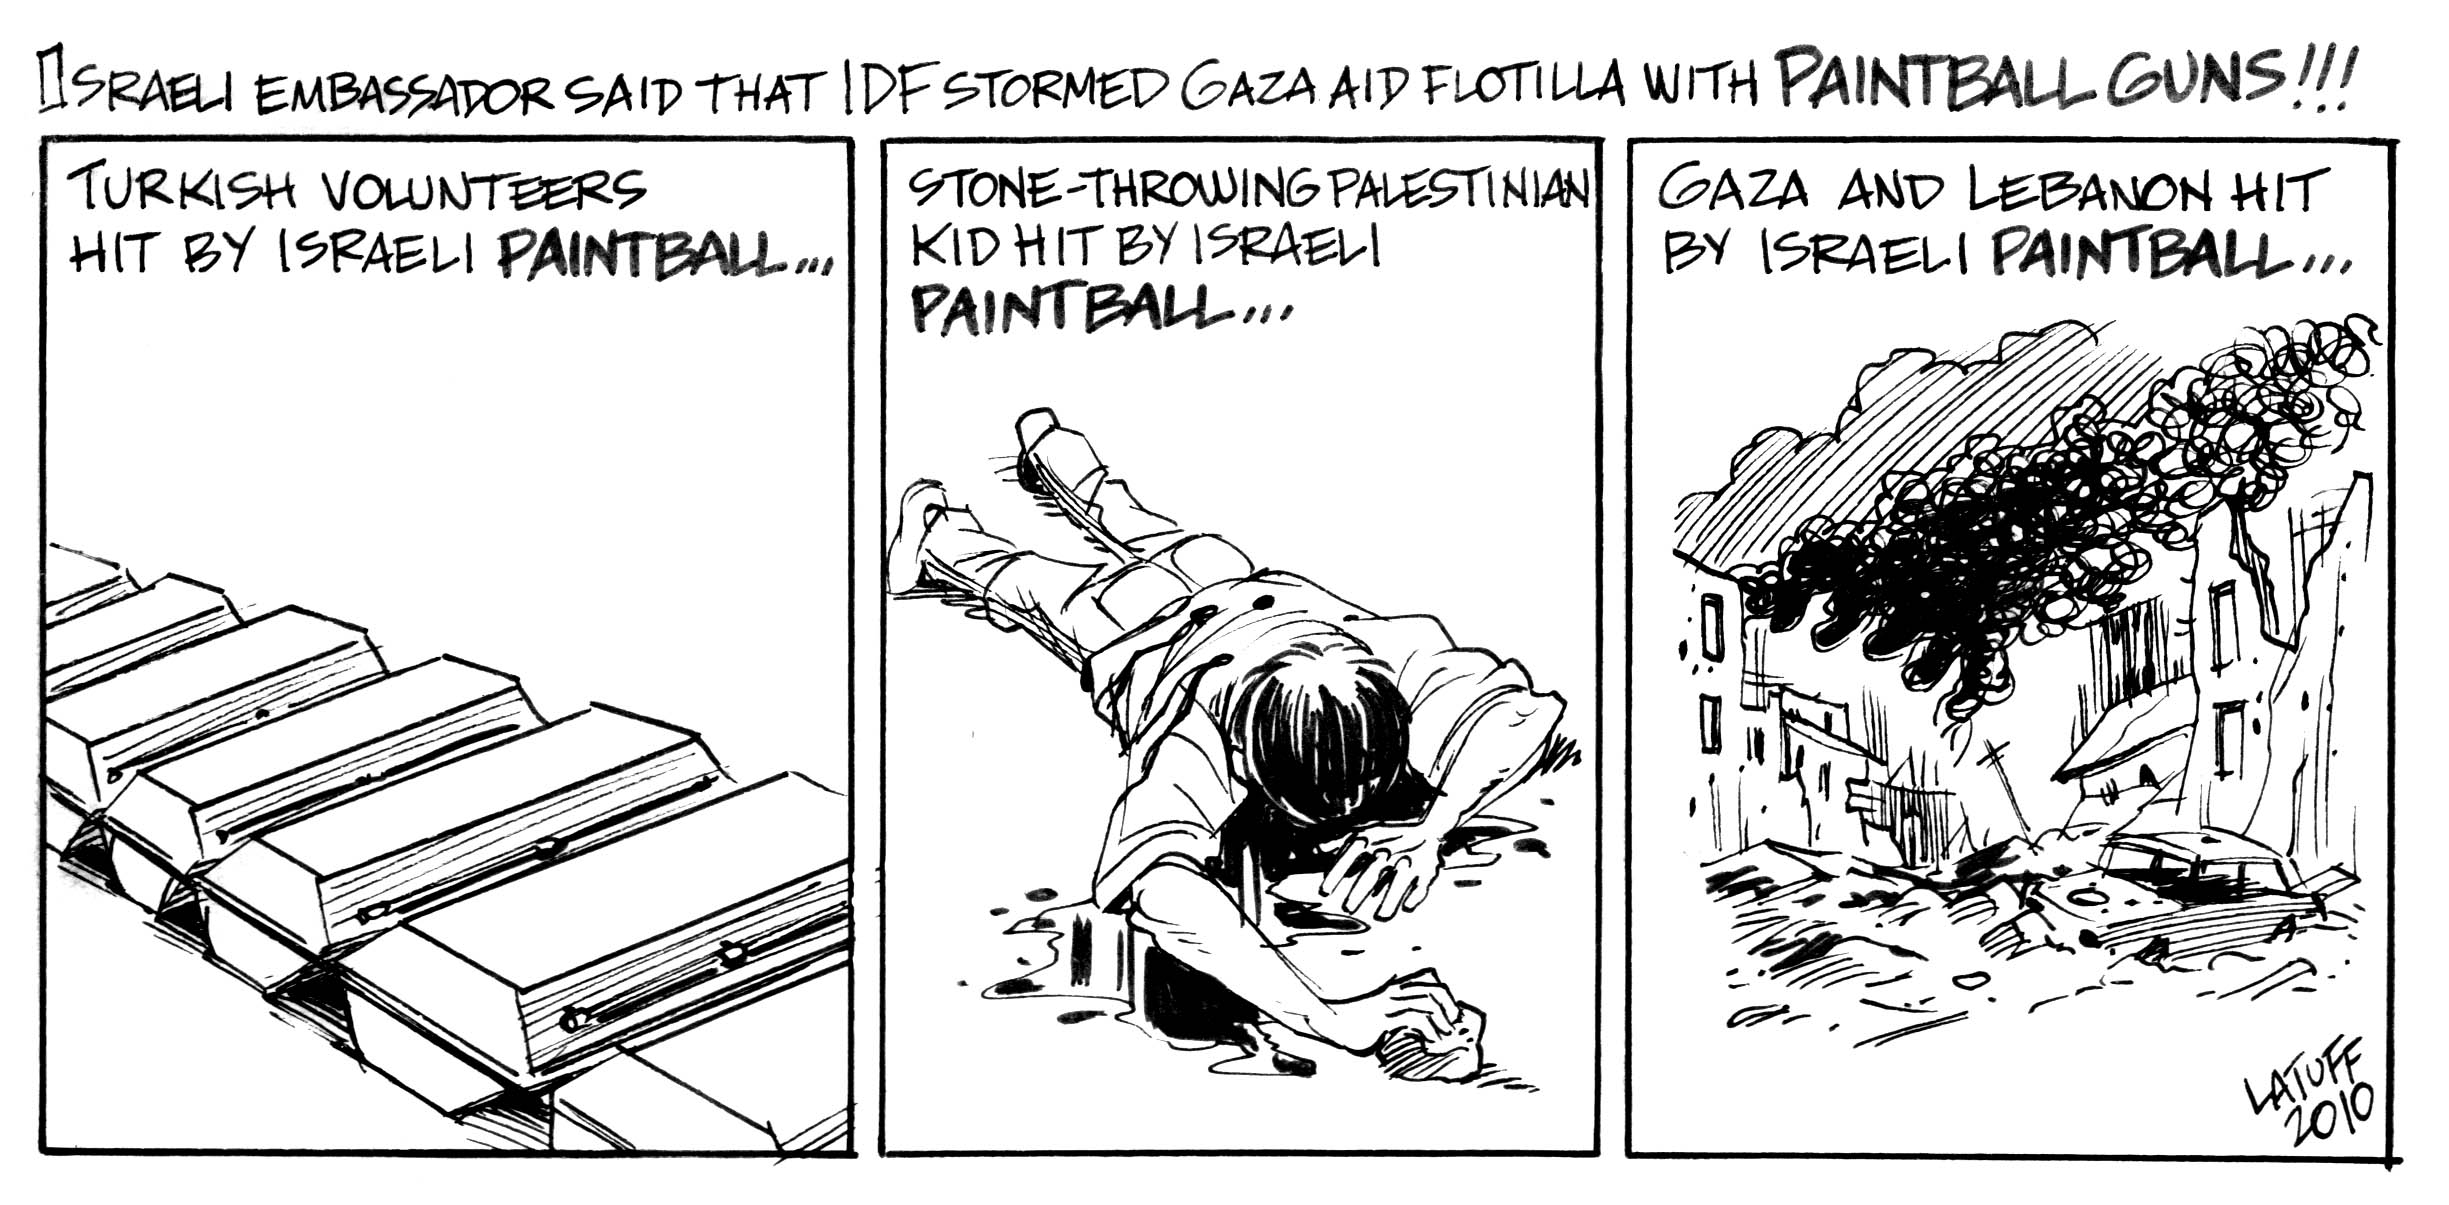 Israeli paintball that KILLS!